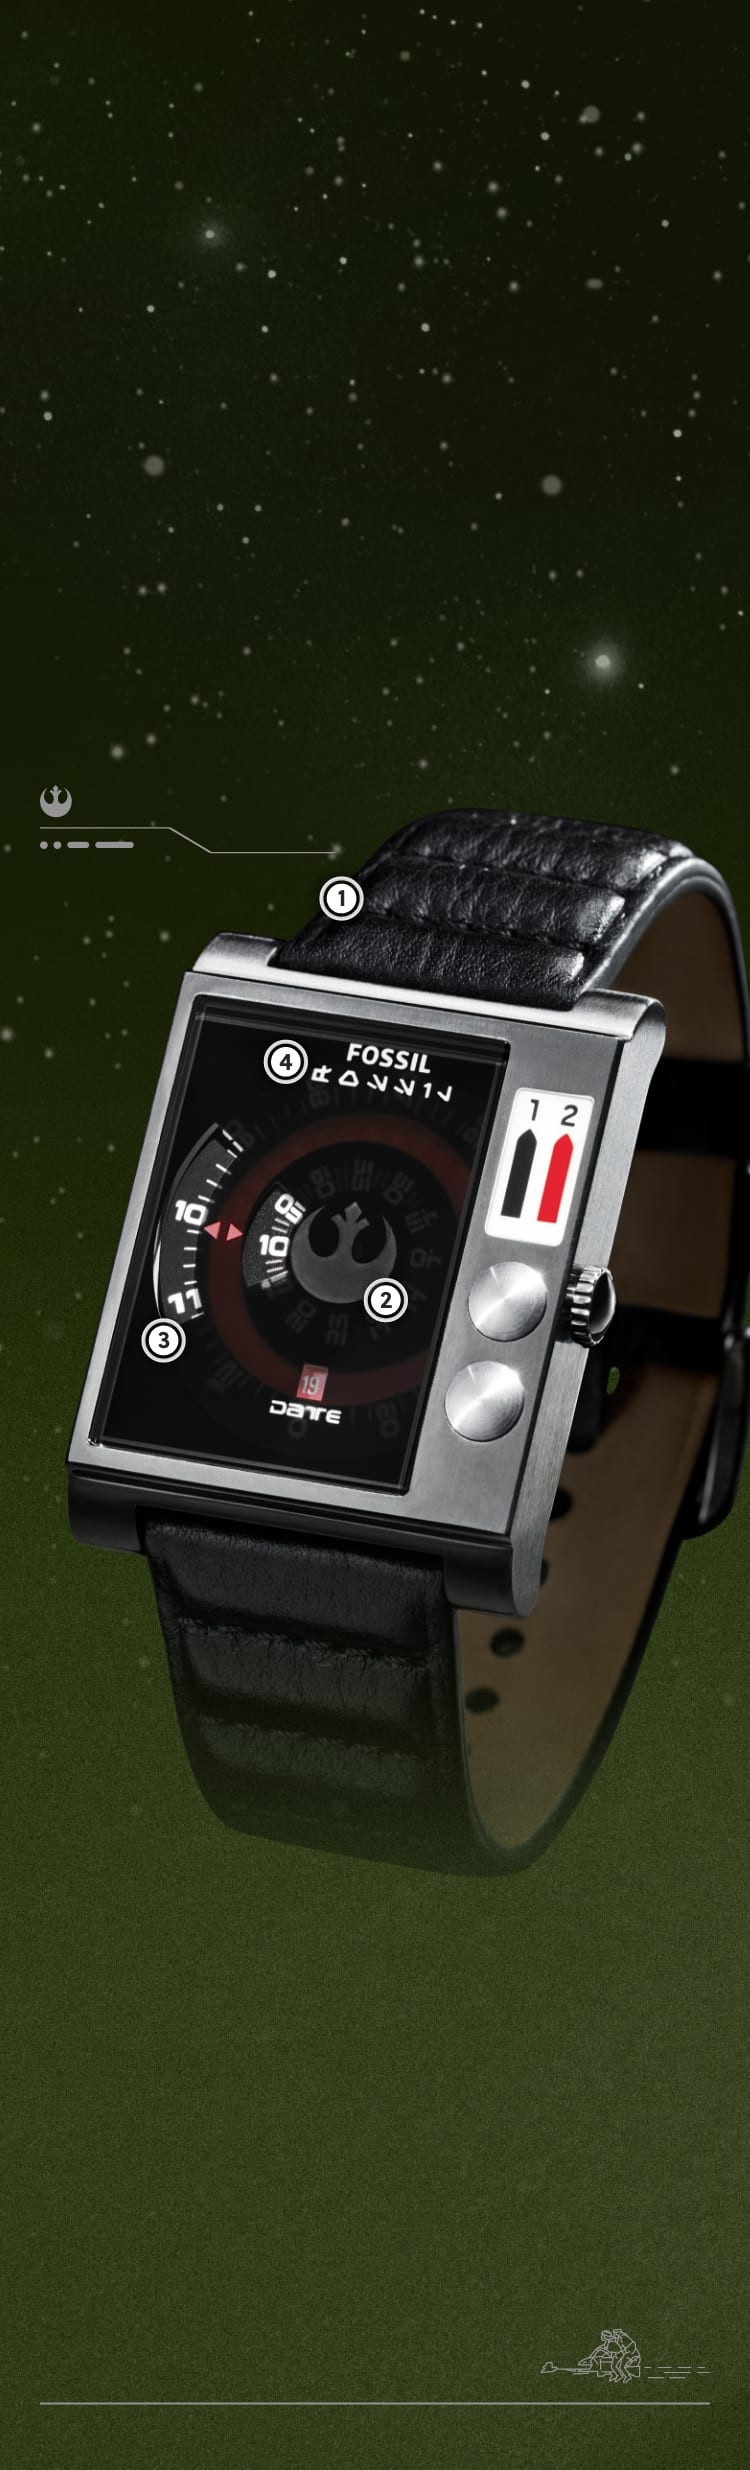 Eine Nahaufnahme einer schwarzen, quadratischen Uhr mit Scheiben zur Zeitmessung und gepolstertem Lederband